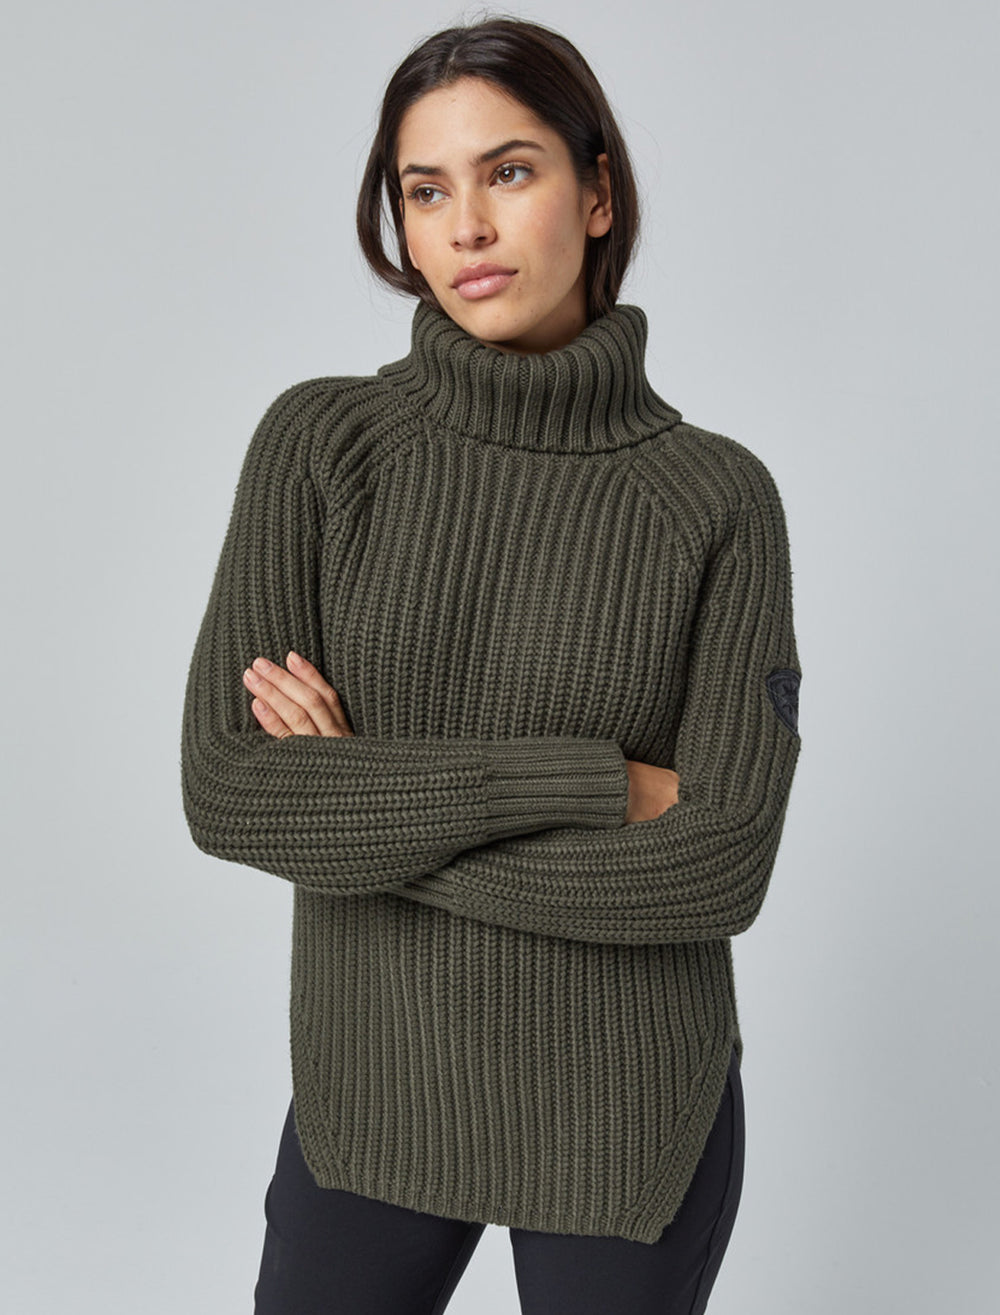 Model wearing Alp N Rock's simone sweater in olive.